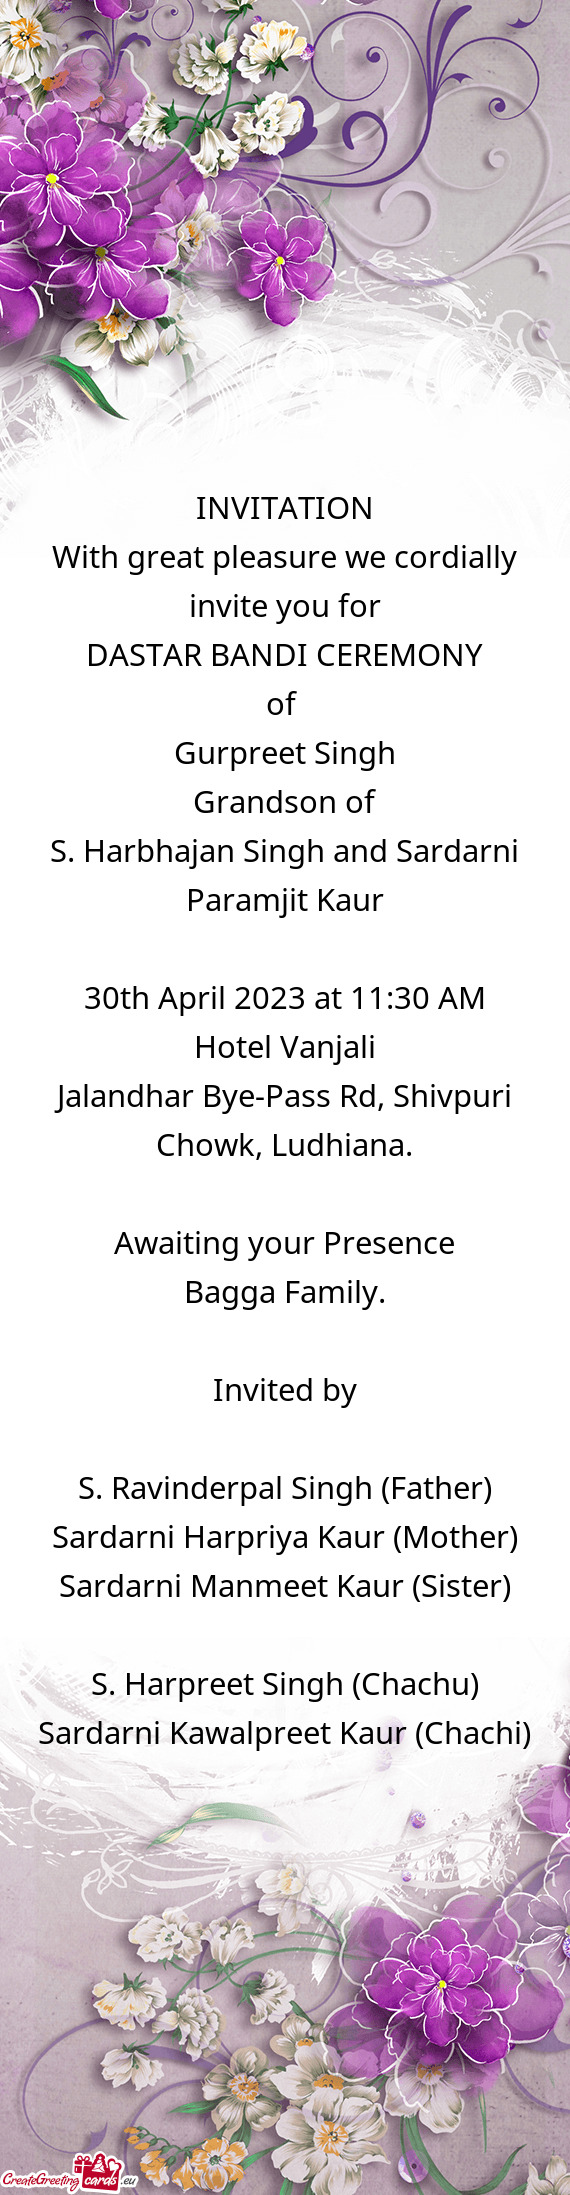 S. Harbhajan Singh and Sardarni Paramjit Kaur